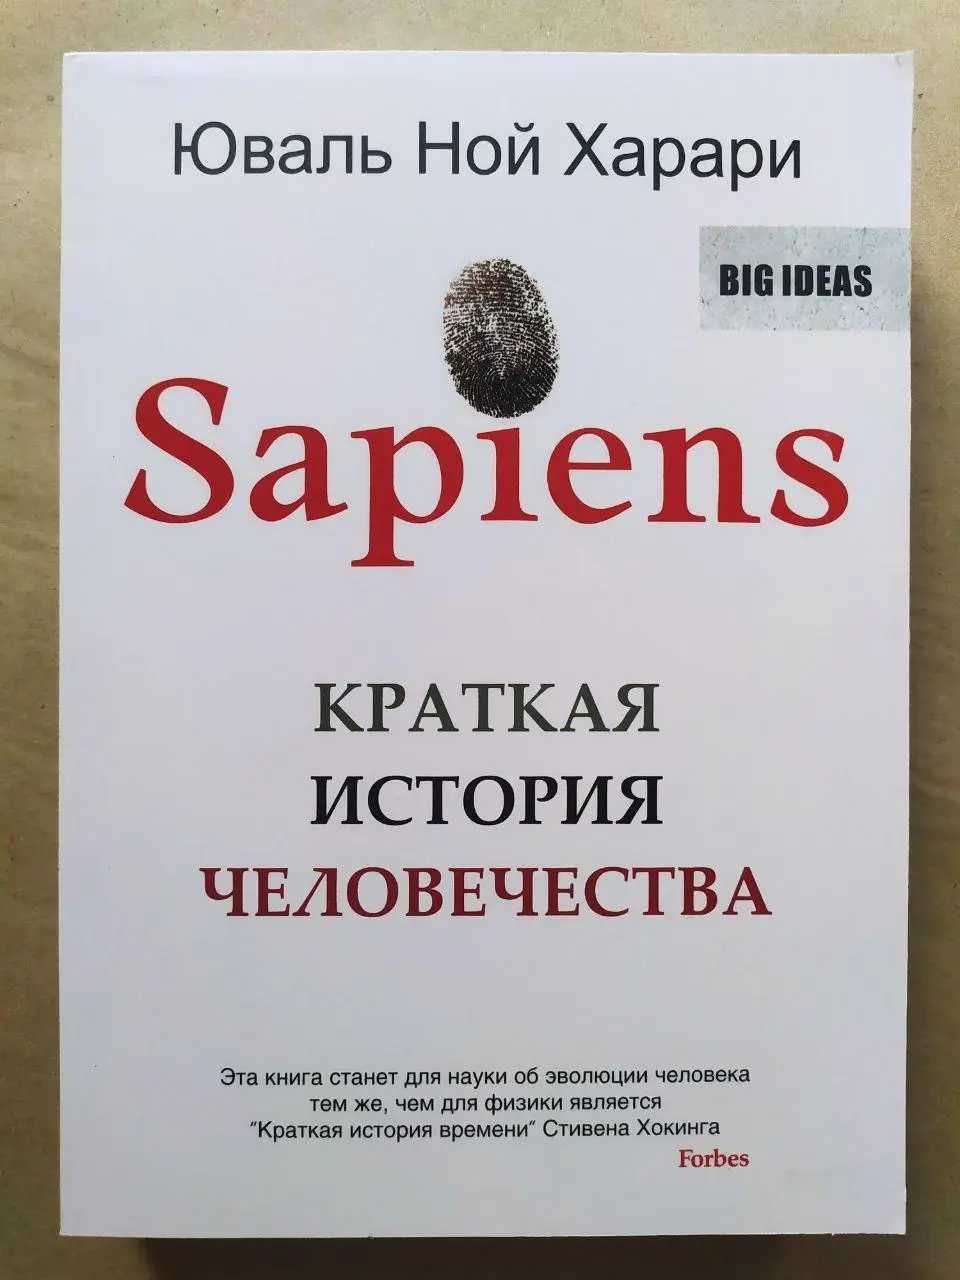 Юваль Ной Харари. Sapiens. Краткая история человечества (мягкая)